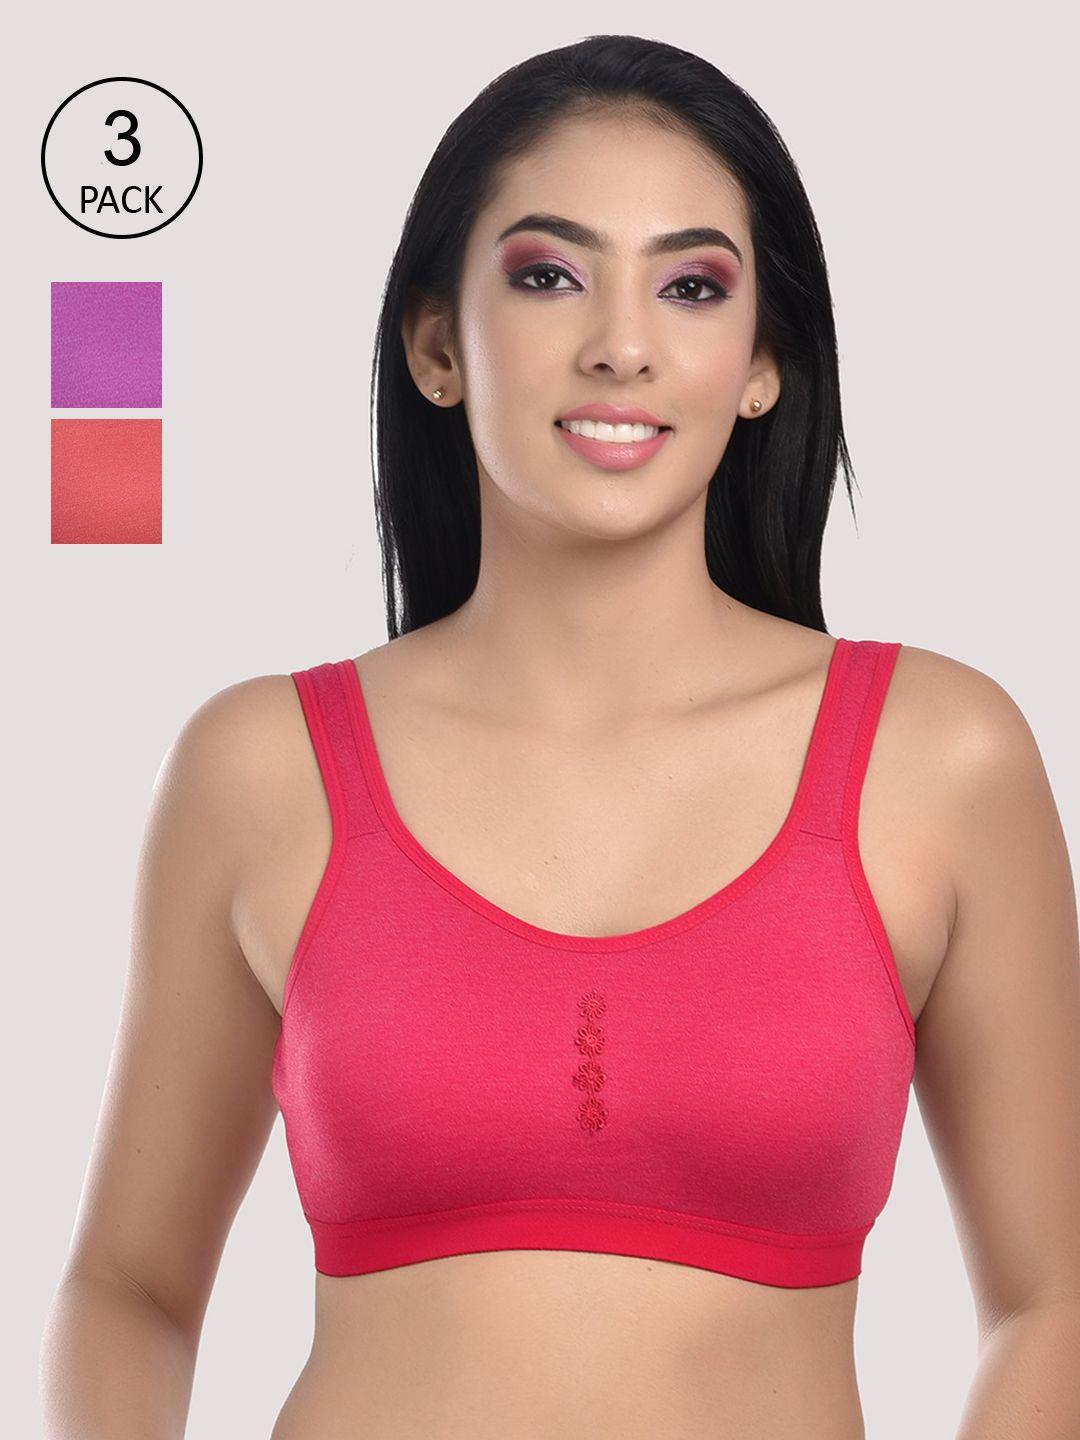 styfun women red & purple cotton blend sports non-wired bra